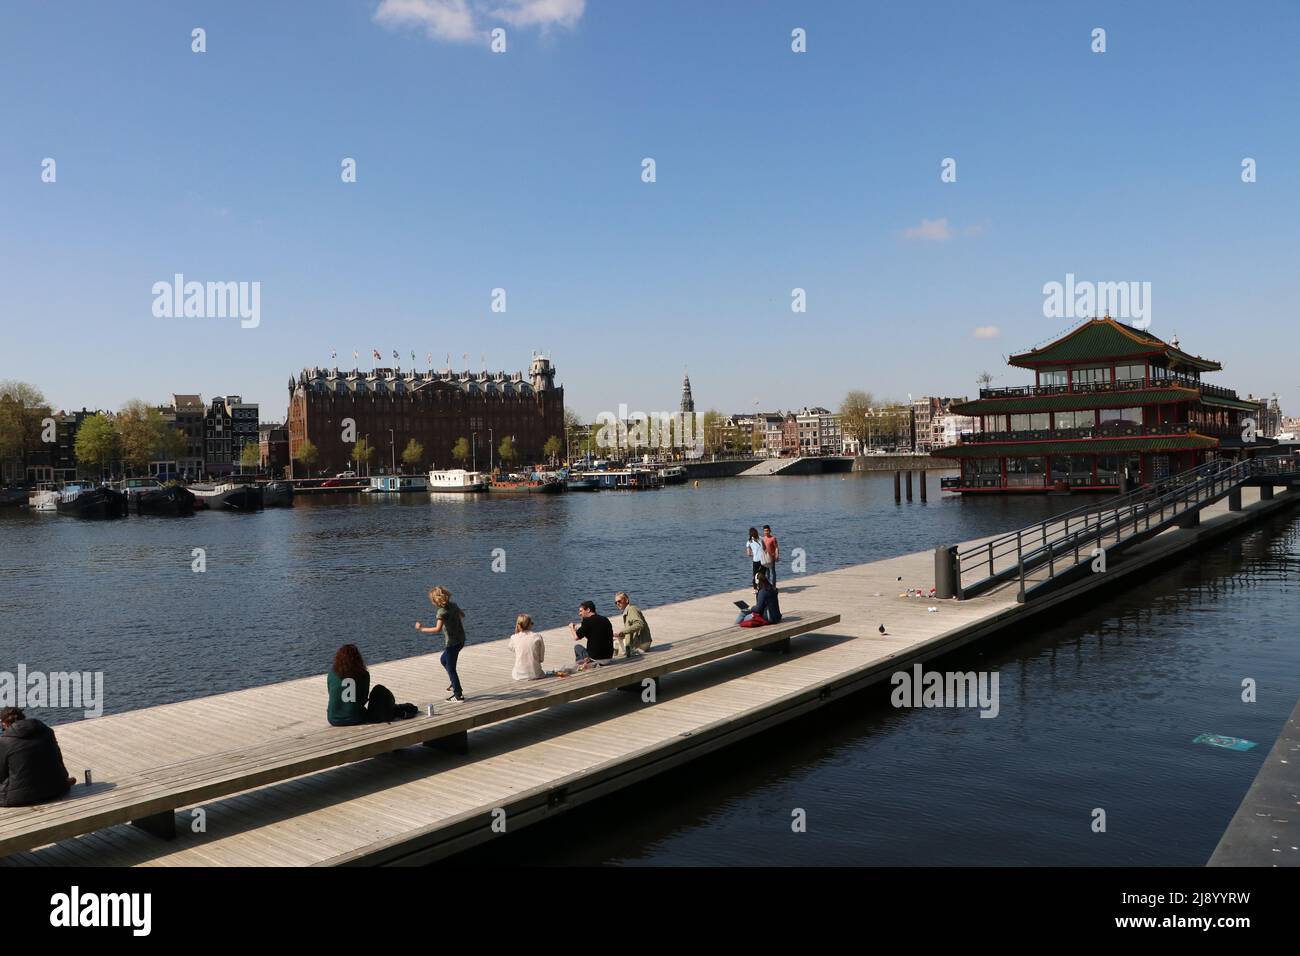 Touristes assis et marchant sur la jetée flottante sur le canal à Amsterdam près de la gare centrale, pays-Bas Banque D'Images